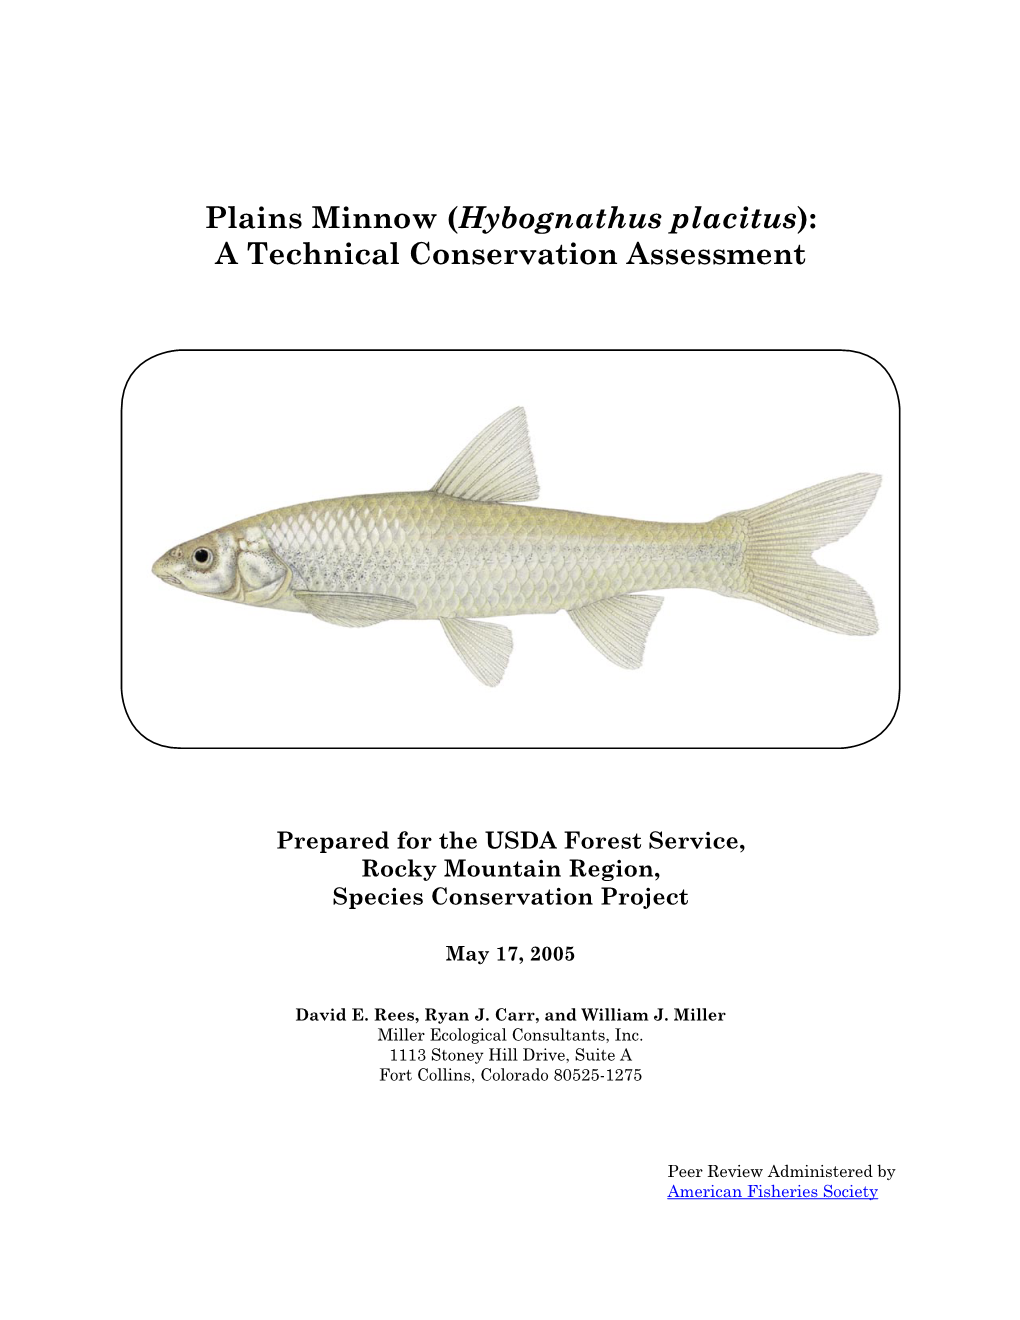 Plains Minnow (Hybognathus Placitus): a Technical Conservation Assessment